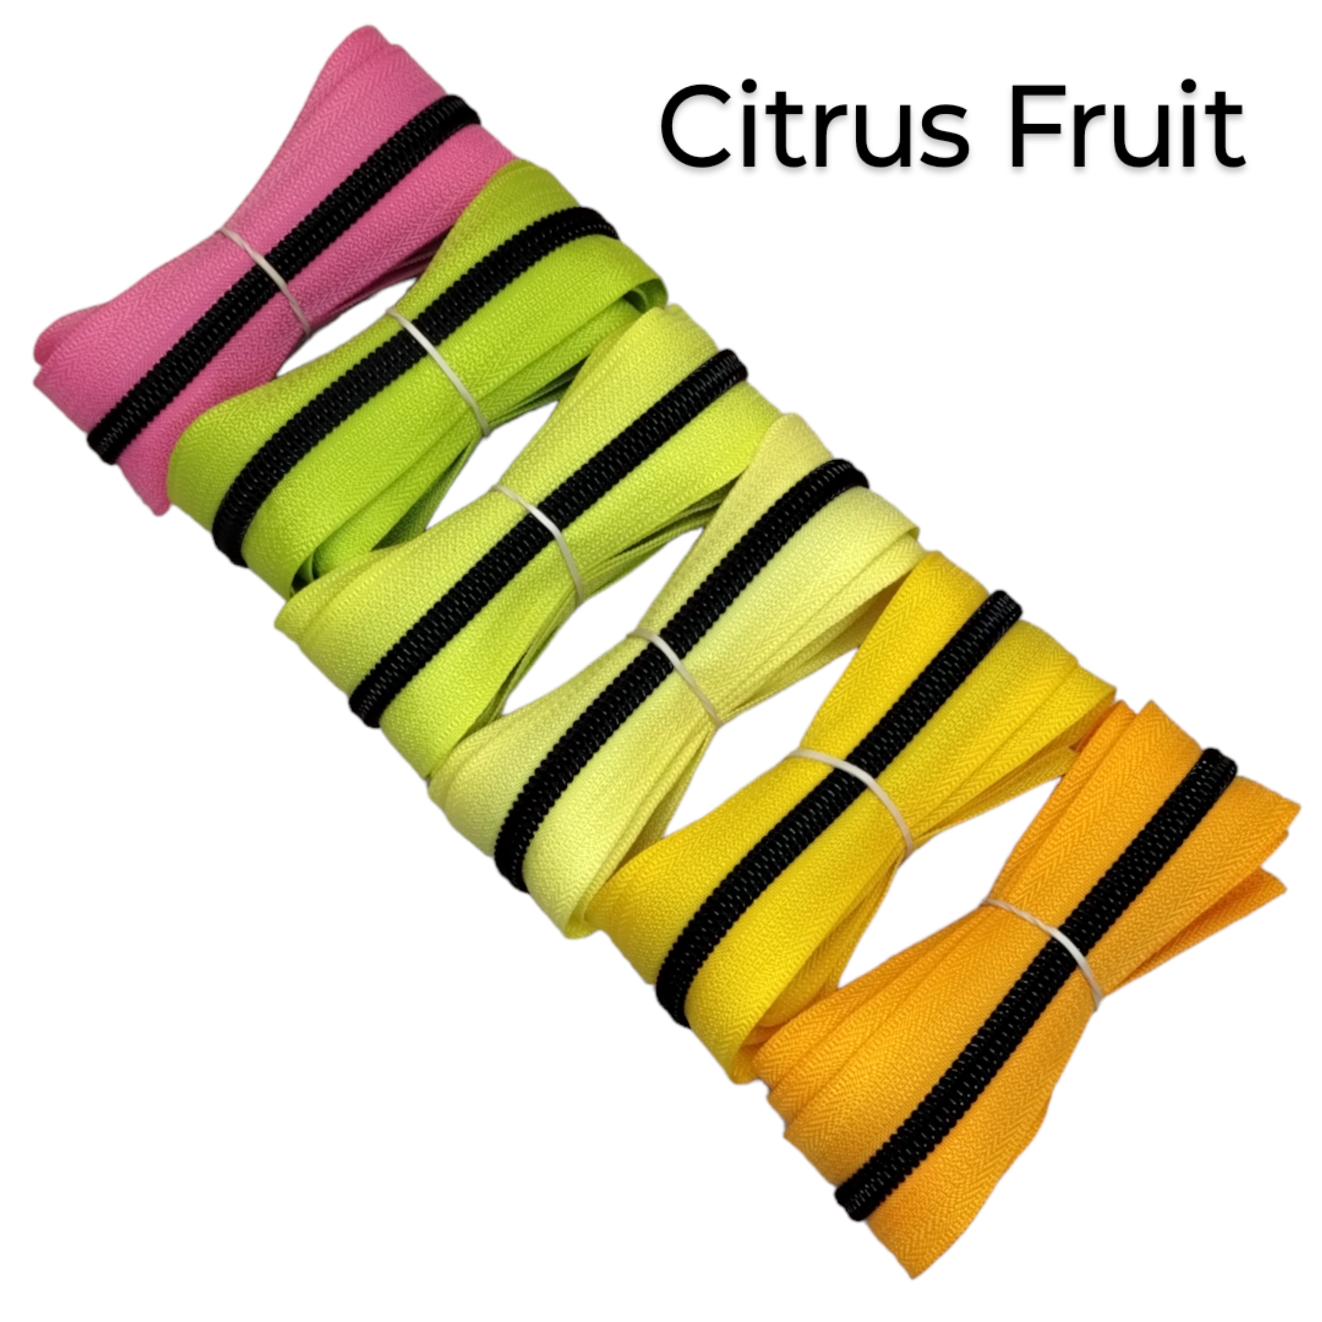 Zipper Bundle - Citrus Fruit - 1m x 6pcs Atelier Fiber Arts